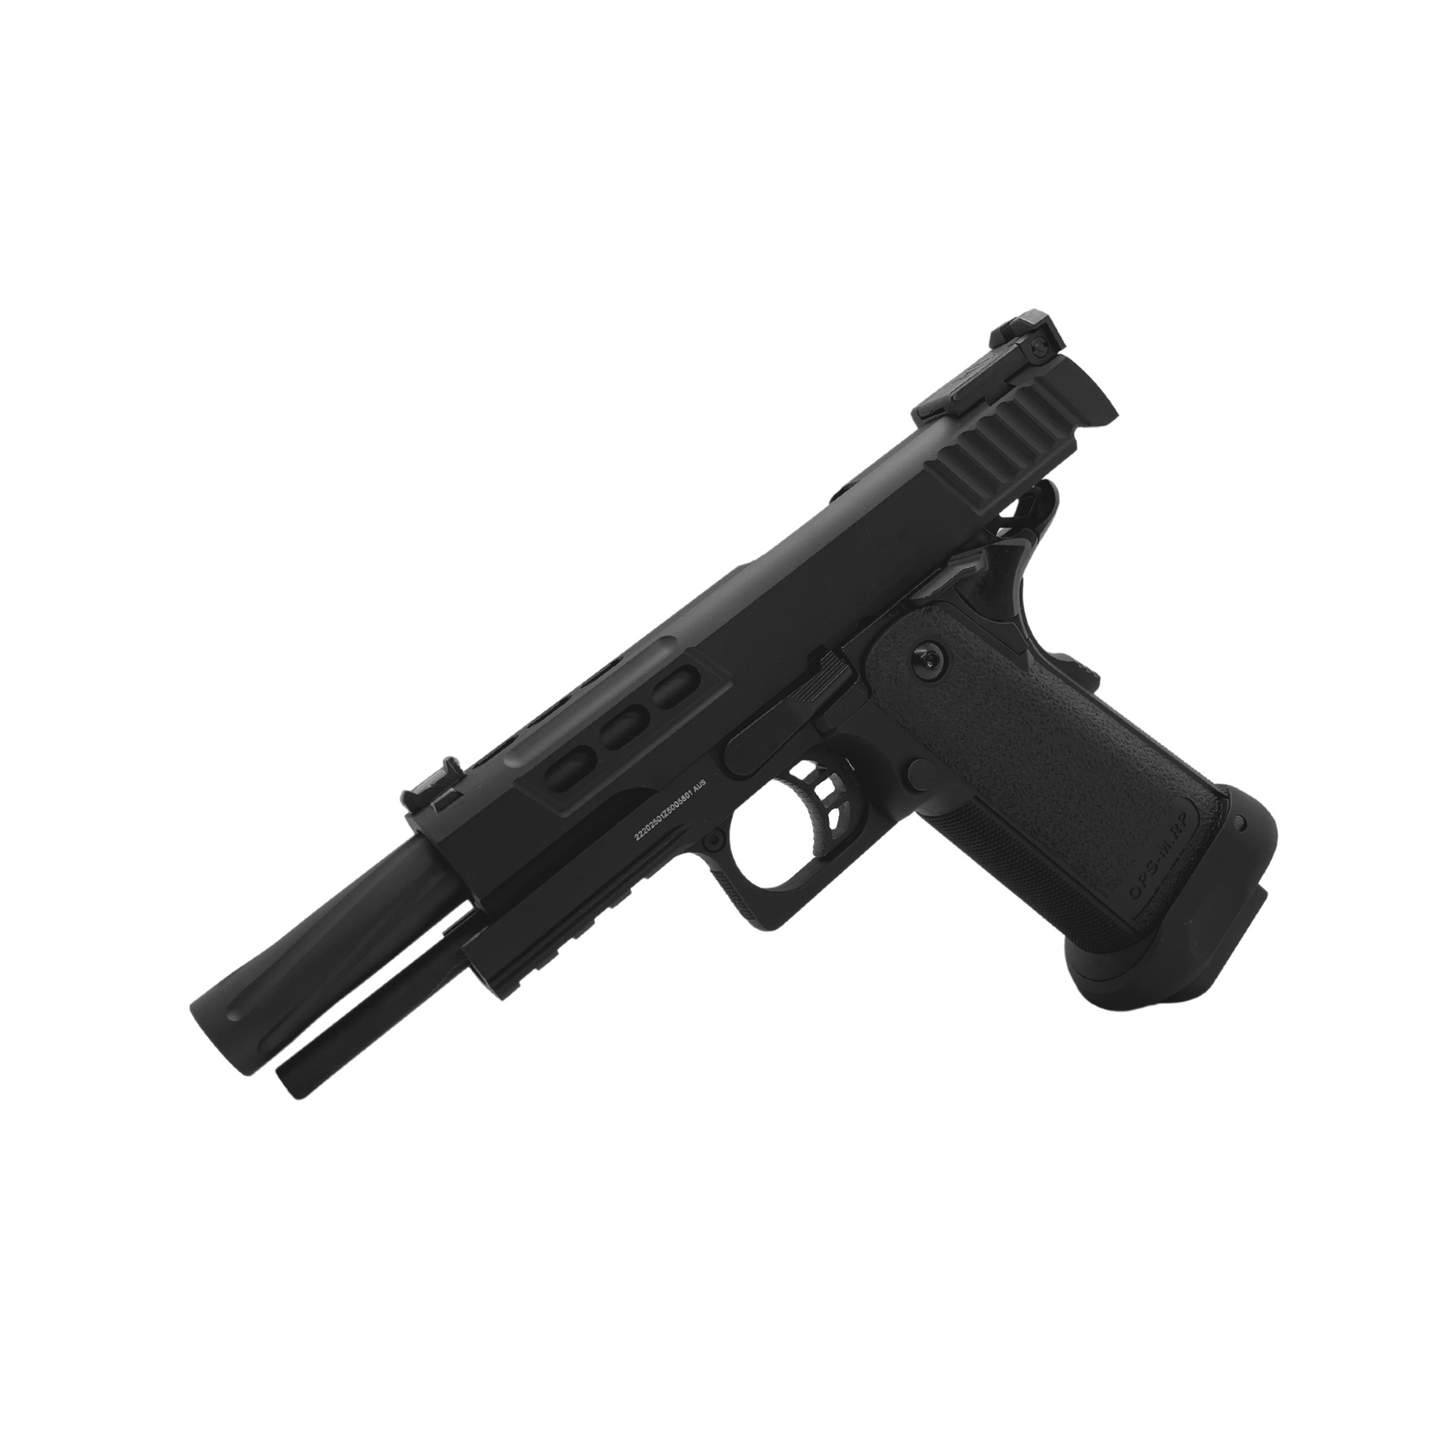 Custom "Blacked Out" G/E Hi-Capa 5.1 Gas Pistol - Gel Blaster